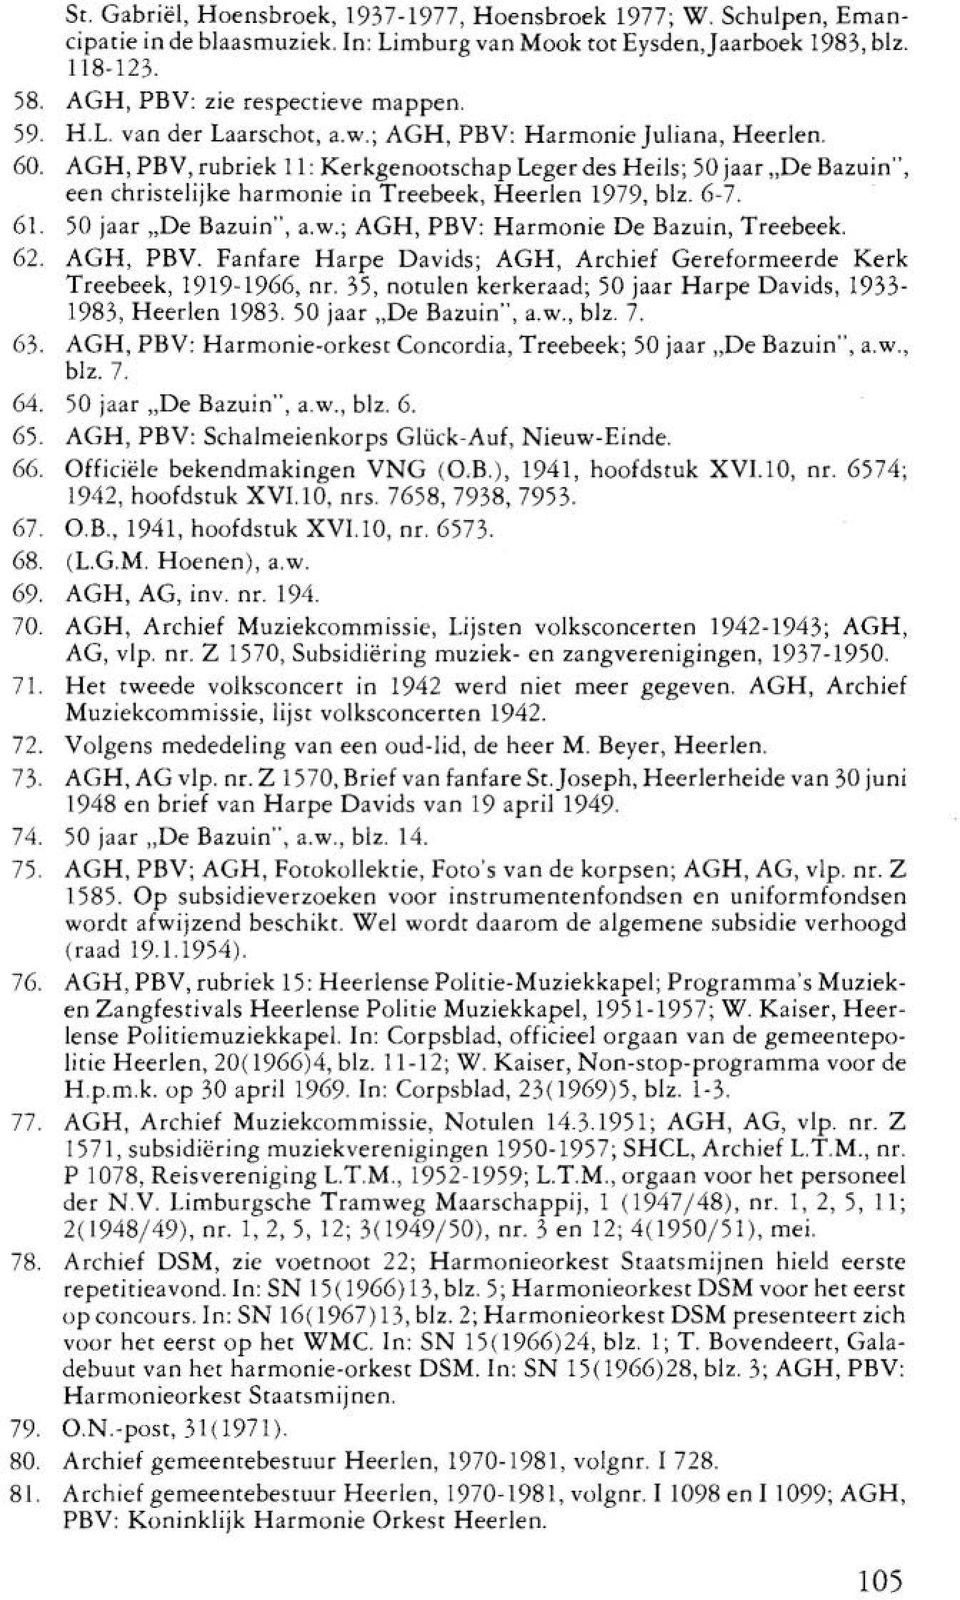 AGH, PBV, rubriek 11: Kerkgenootschap Leger des Heils; 50 jaar "De Bazuin", een christelijke harmonie in Treebeek, Heerlen 1979, blz. 6-7. 61. 50 jaar "De Bazuin", a.w.